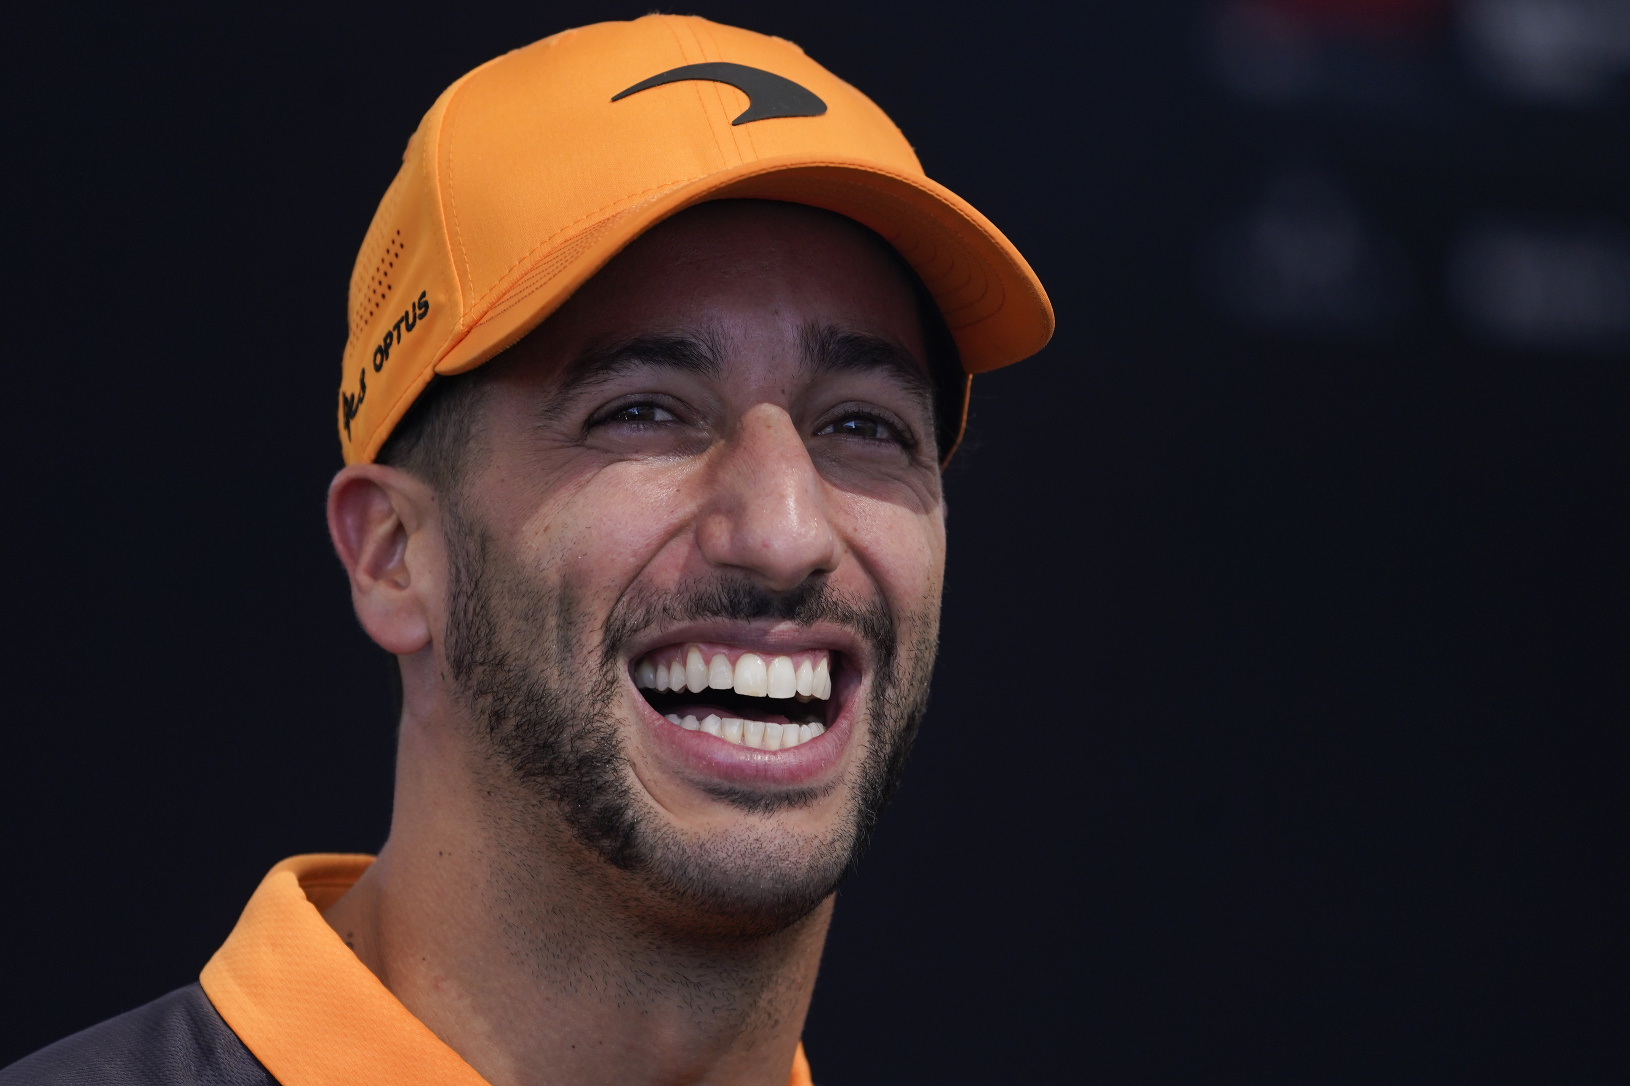 Nezameniteľný úsmev Daniela Ricciarda